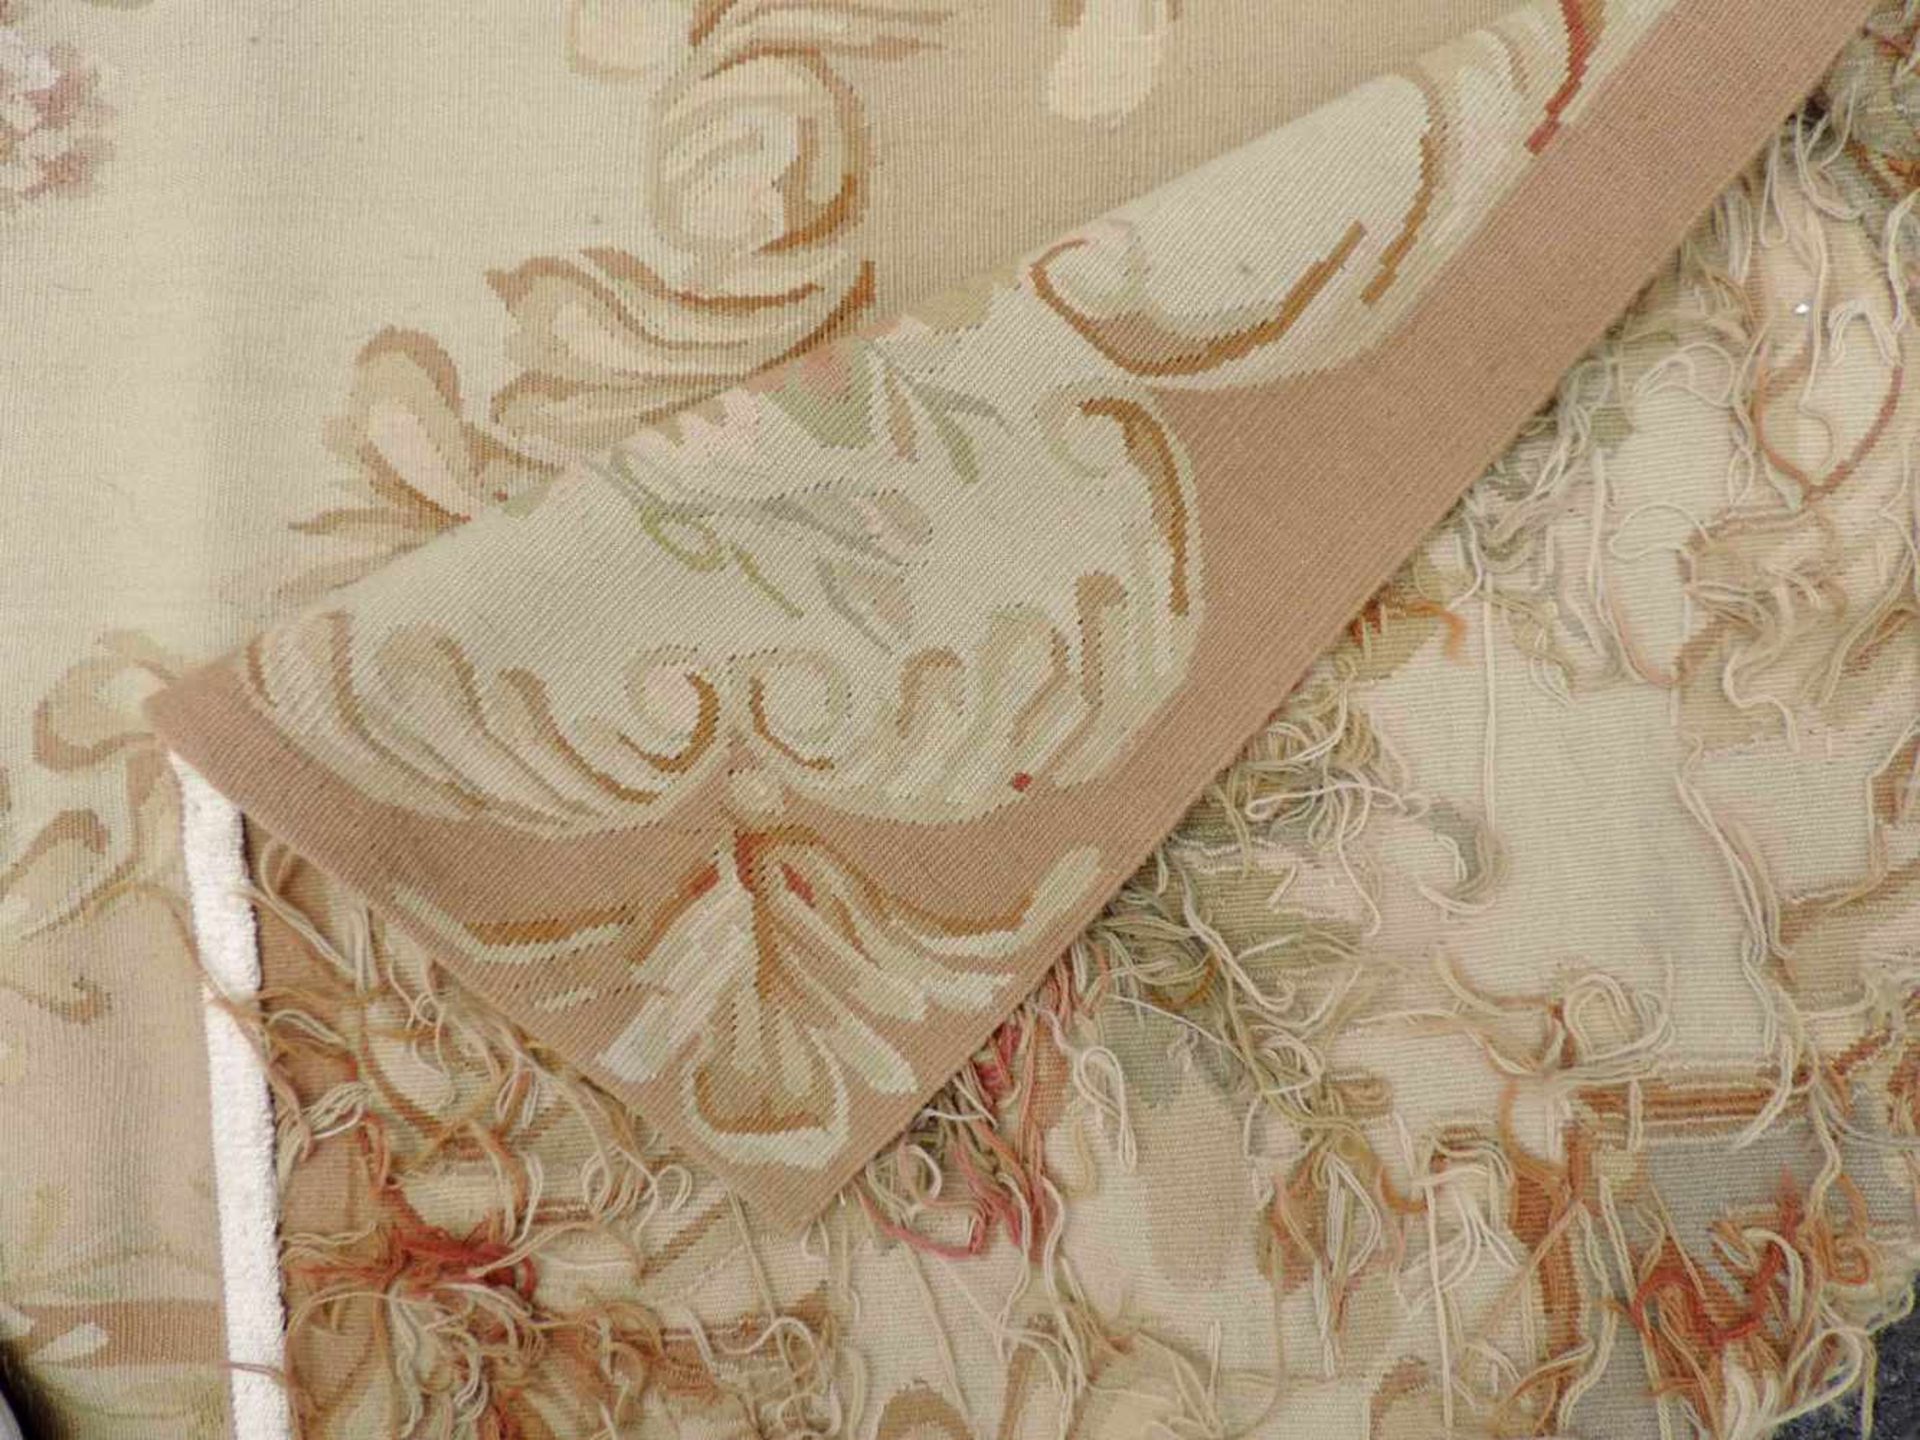 Tapis de Pied "Aubusson". Salonteppich.275 cm x 188 cm. Handgewebt. Wolle auf Wolle.Tapis de Pied " - Image 2 of 10